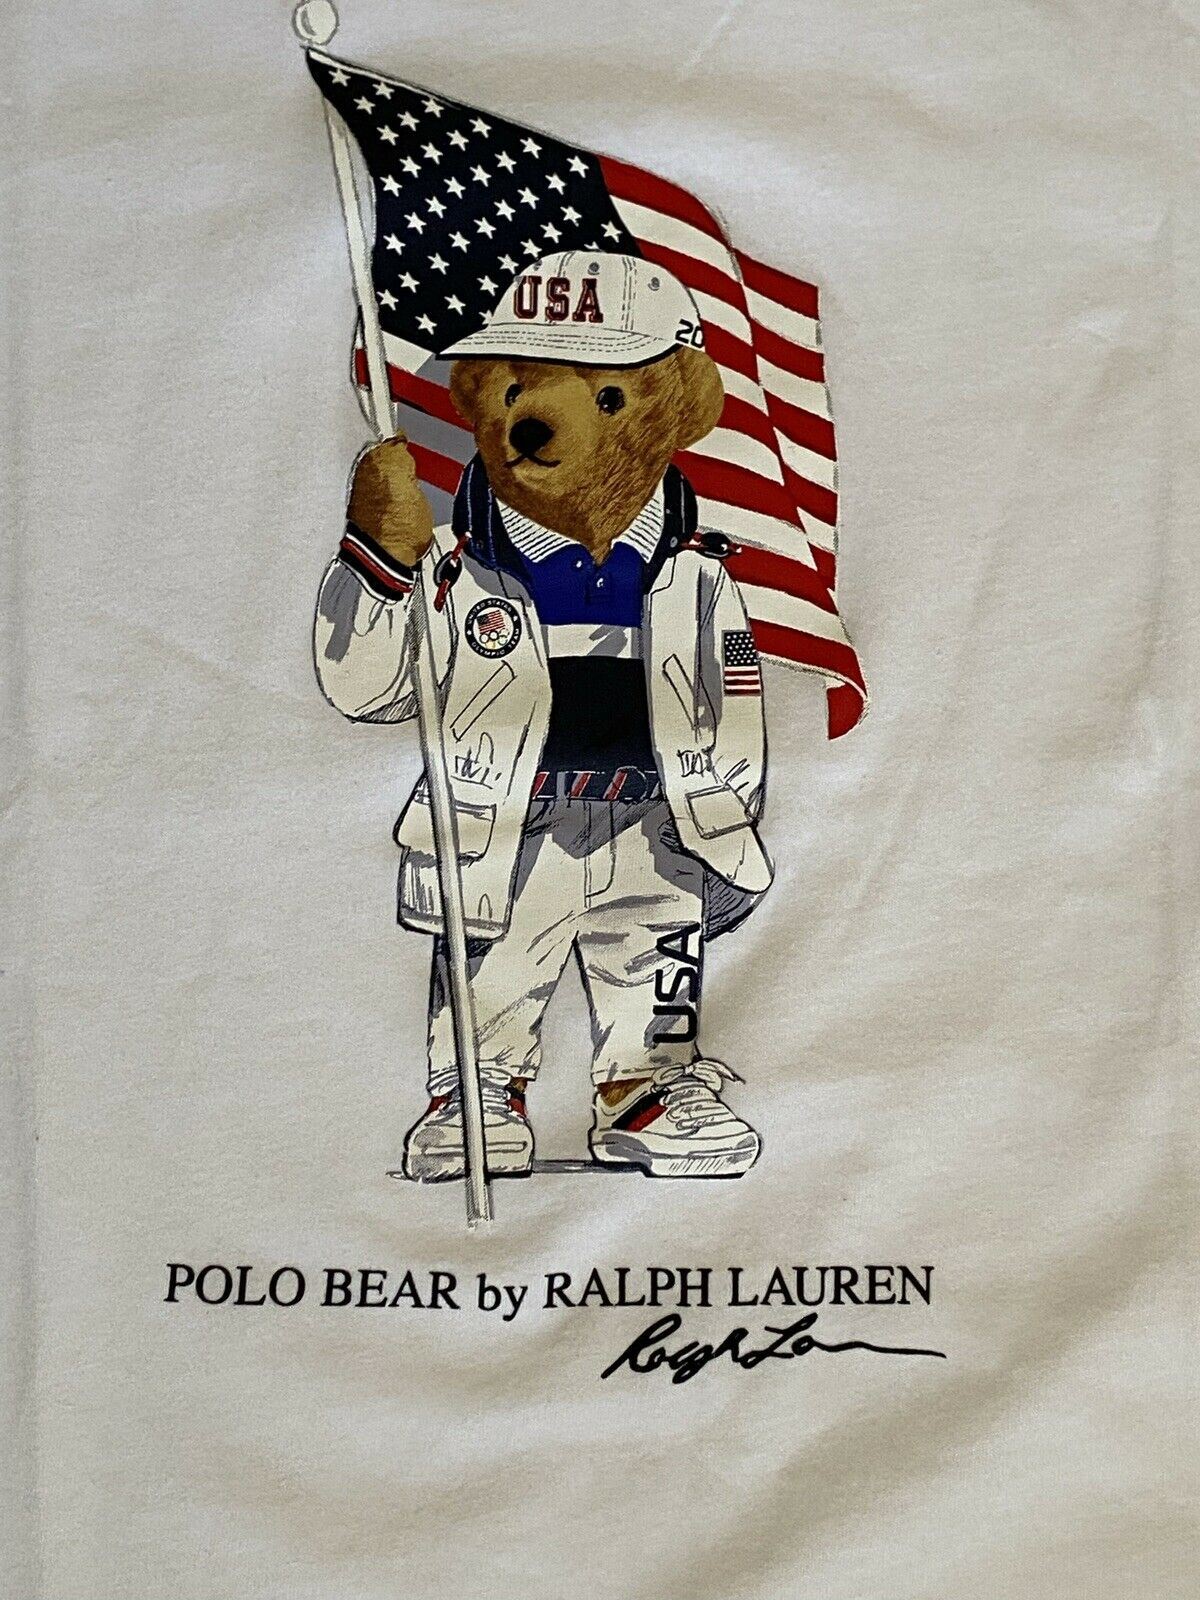 NWT $35 Polo Ralph Lauren Boys Bear Olympic Team USA T-Shirt XL (18-20)